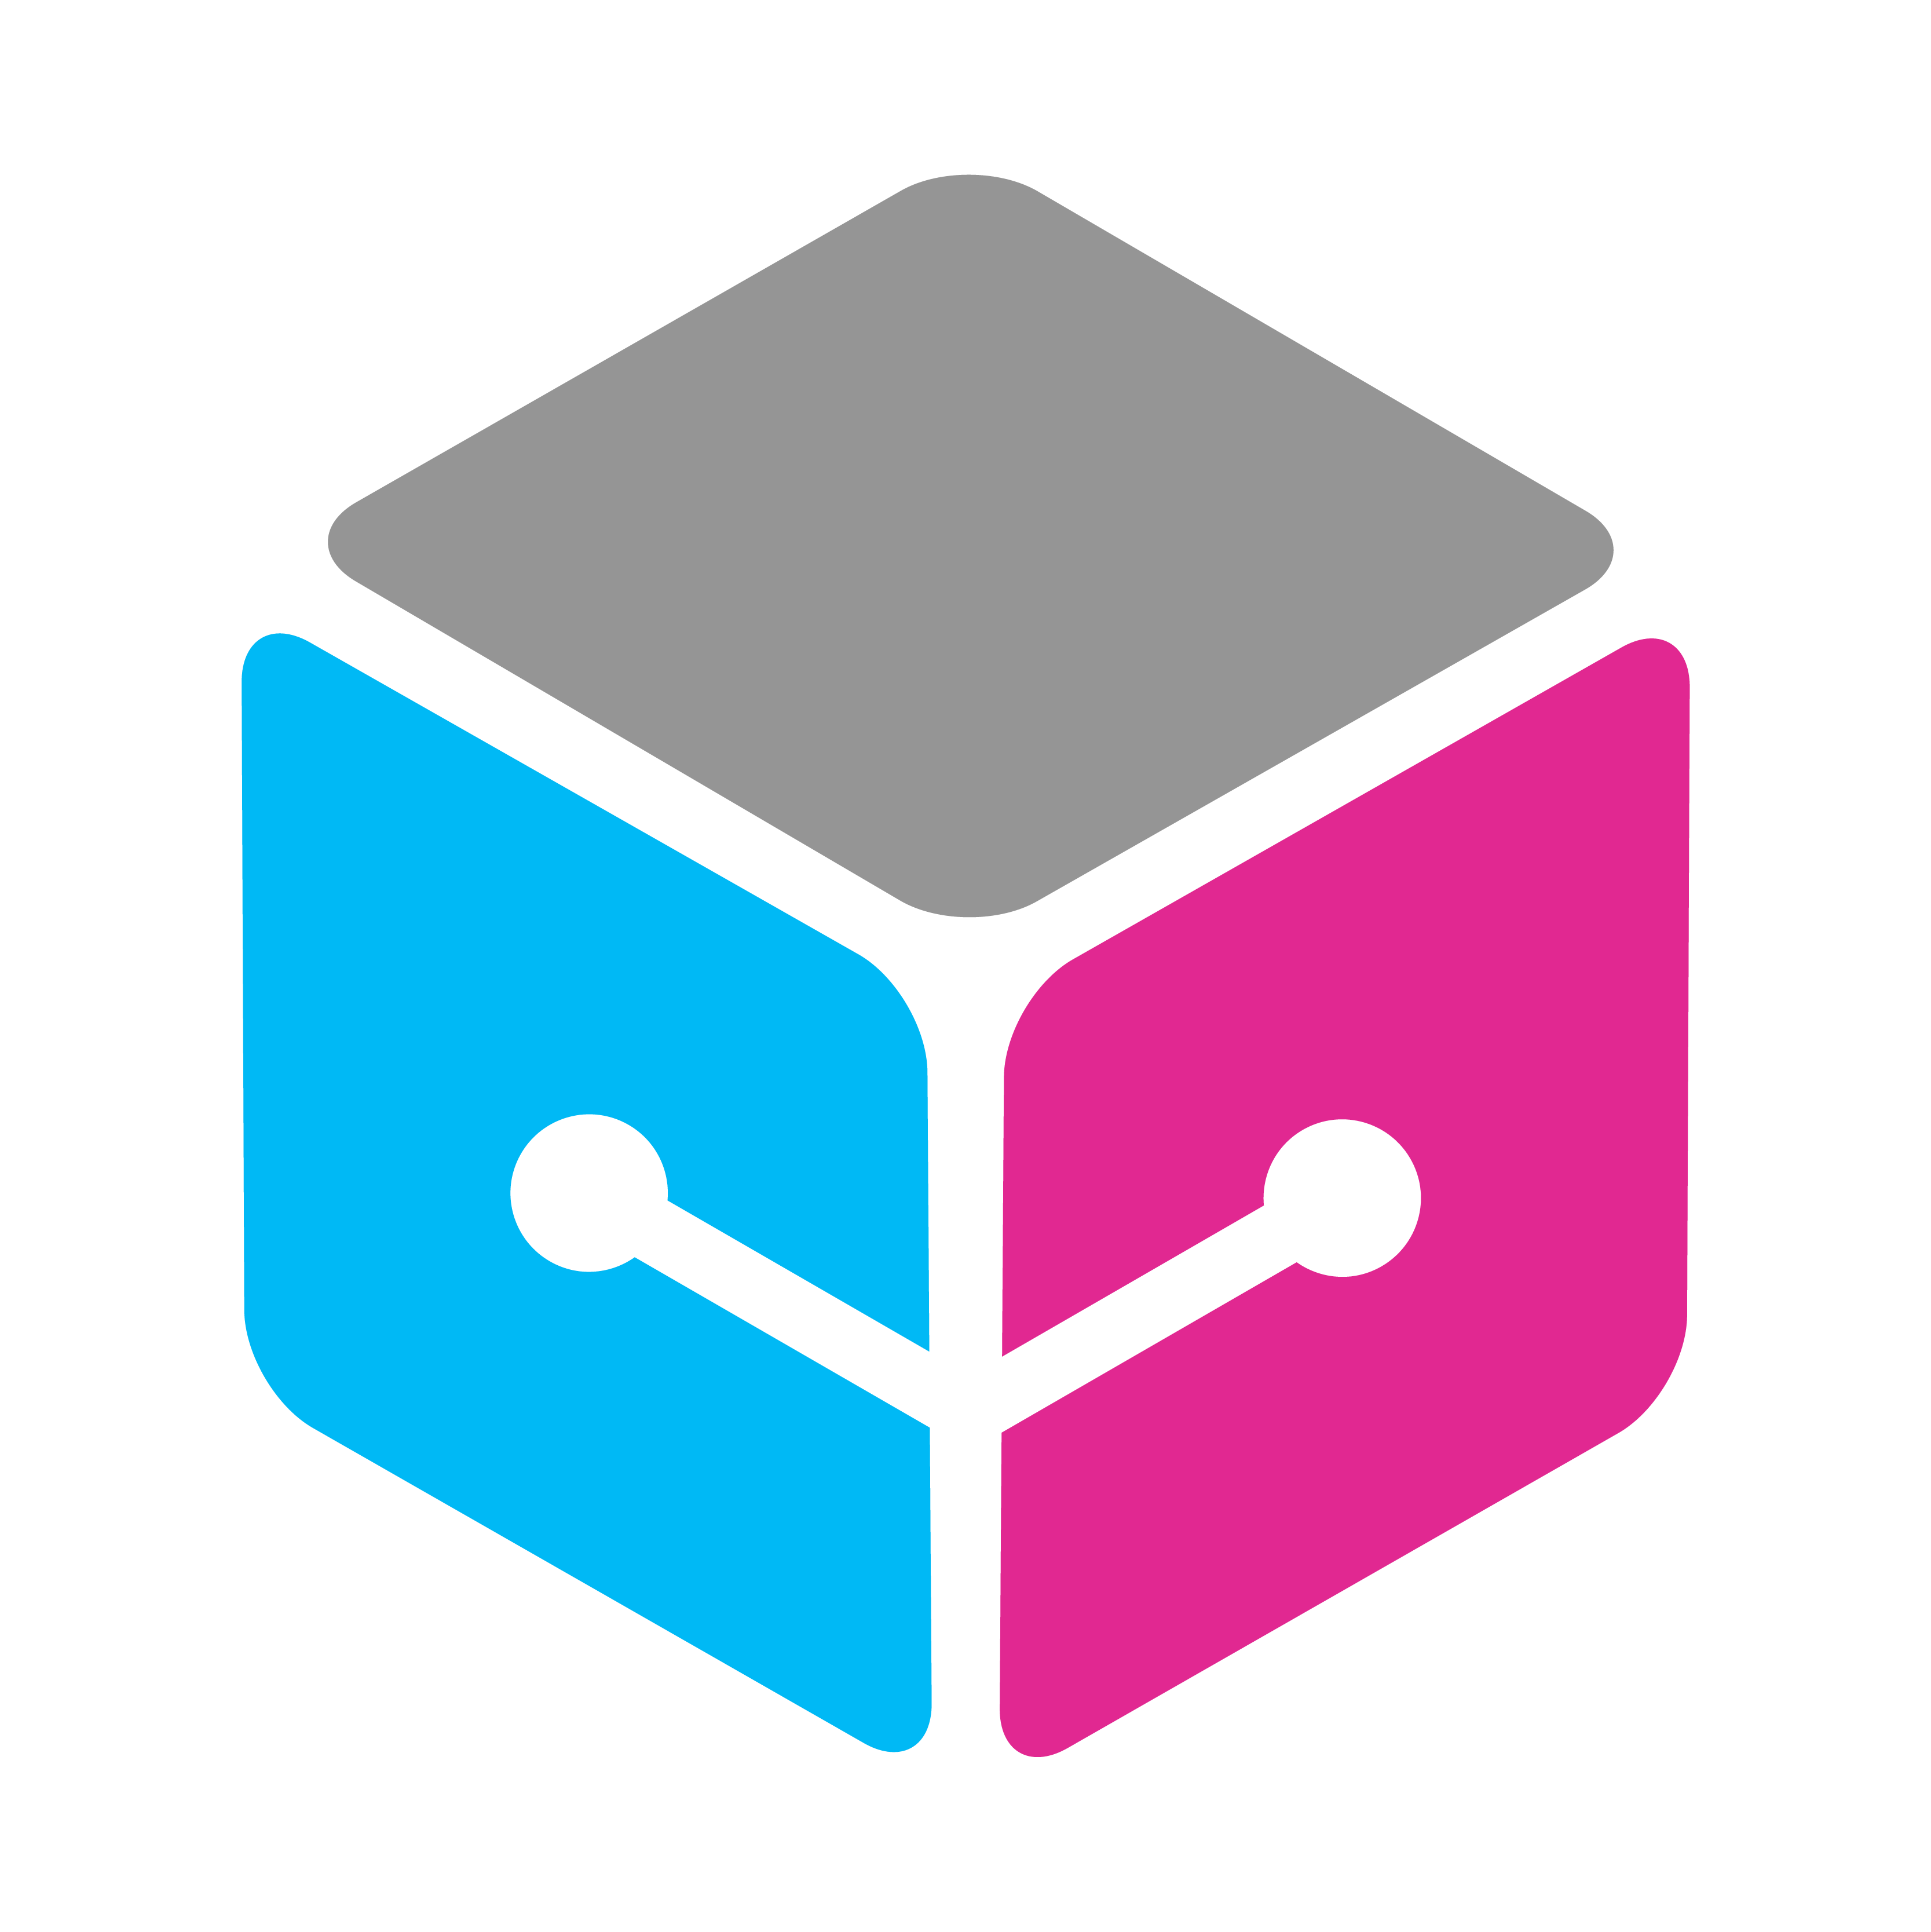 Логотип куб. Библиотека куб логотип. Куб ютуб. It куб логотип белый. Cubes apk